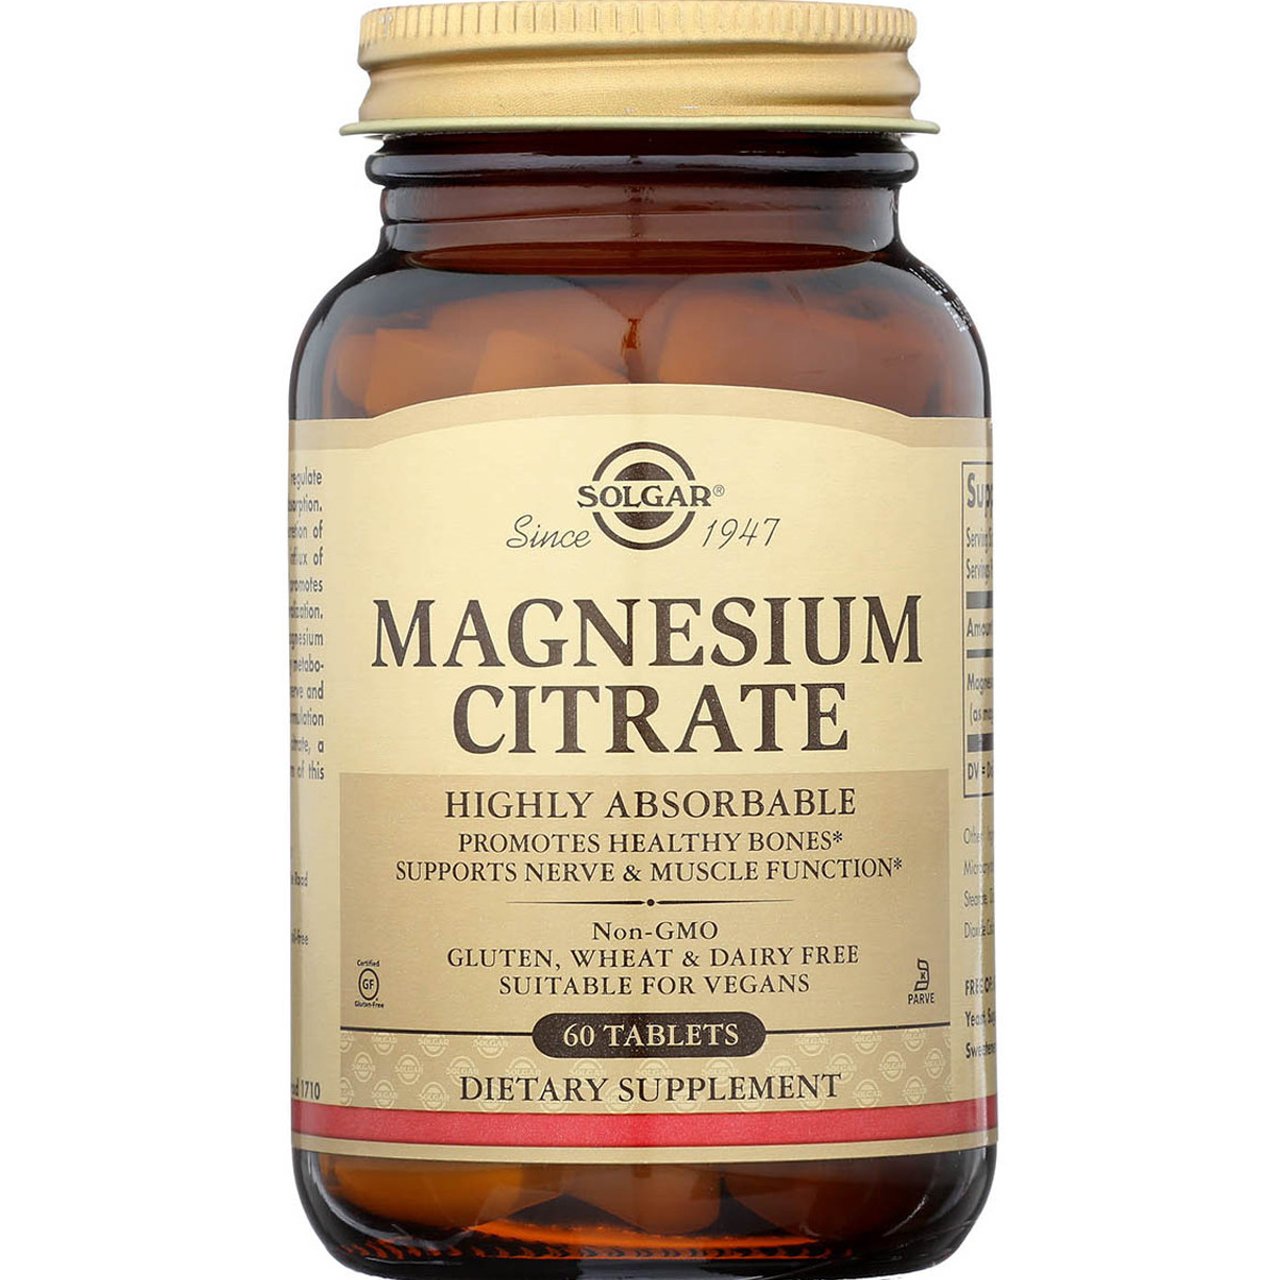 Solgar Magnesium Citrate Συμπλήρωμα Διατροφής με Μαγνήσιο Κιτρικής Μορφής Υψηλής Απορροφησιμότητας για την Καλή Λειτουργία του Νευρικού & Μυοσκελετικού Συστήματος 60tabs